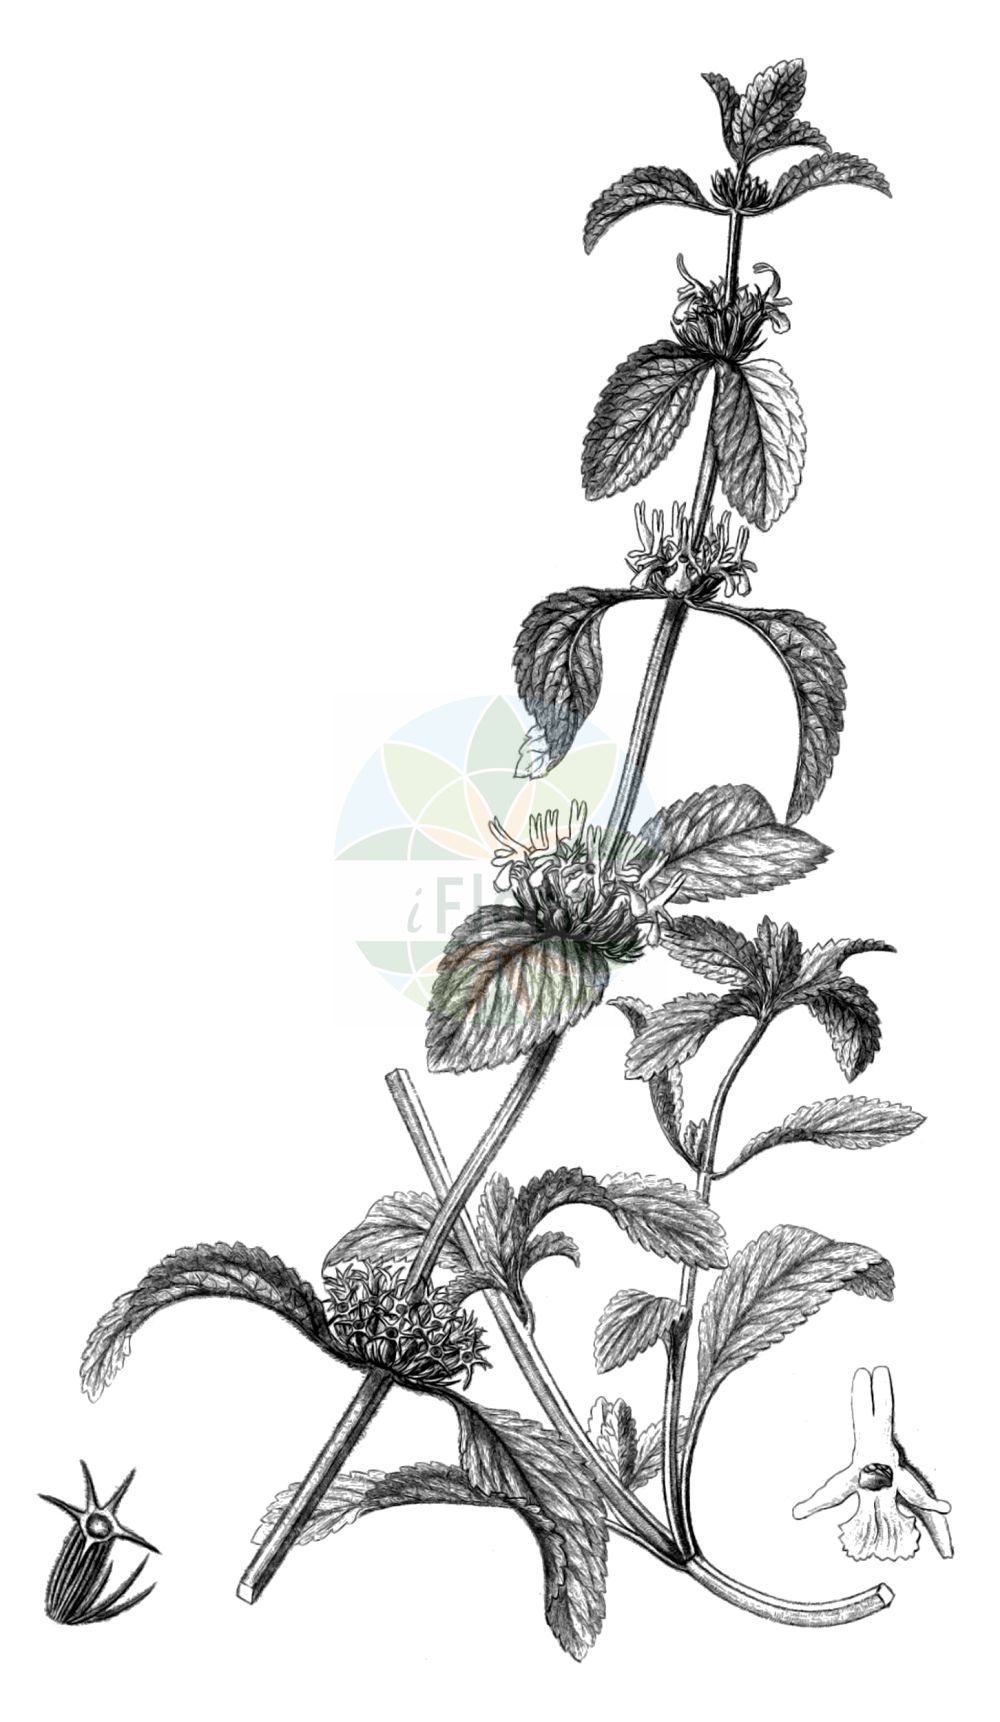 Historische Abbildung von Marrubium peregrinum (Ungarischer Andorn - Branched Horehound). Das Bild zeigt Blatt, Bluete, Frucht und Same. ---- Historical Drawing of Marrubium peregrinum (Ungarischer Andorn - Branched Horehound). The image is showing leaf, flower, fruit and seed.(Marrubium peregrinum,Ungarischer Andorn,Branched Horehound,Atirbesia bracteata,Marrubium affine,Marrubium angustifolium,Marrubium candidissimum,Marrubium civice,Marrubium creticum,Marrubium flexuosum,Marrubium odoratissimum,Marrubium pannonicum,Marrubium pauciflorum,Marrubium peregrinum,Marrubium praecox,Marrubium remotum,Marrubium rubrum,Marrubium setaceum,Marrubium uncinatum,Ungarischer Andorn,Fremder Andorn,Grauer Andorn,Wander-Andorn,Branched Horehound,Horehound,Marrubium,Andorn,Horehound,Lamiaceae,Lippenblütengewächse,Nettle family,Blatt,Bluete,Frucht,Same,leaf,flower,fruit,seed,Reichenbach (1823-1832))